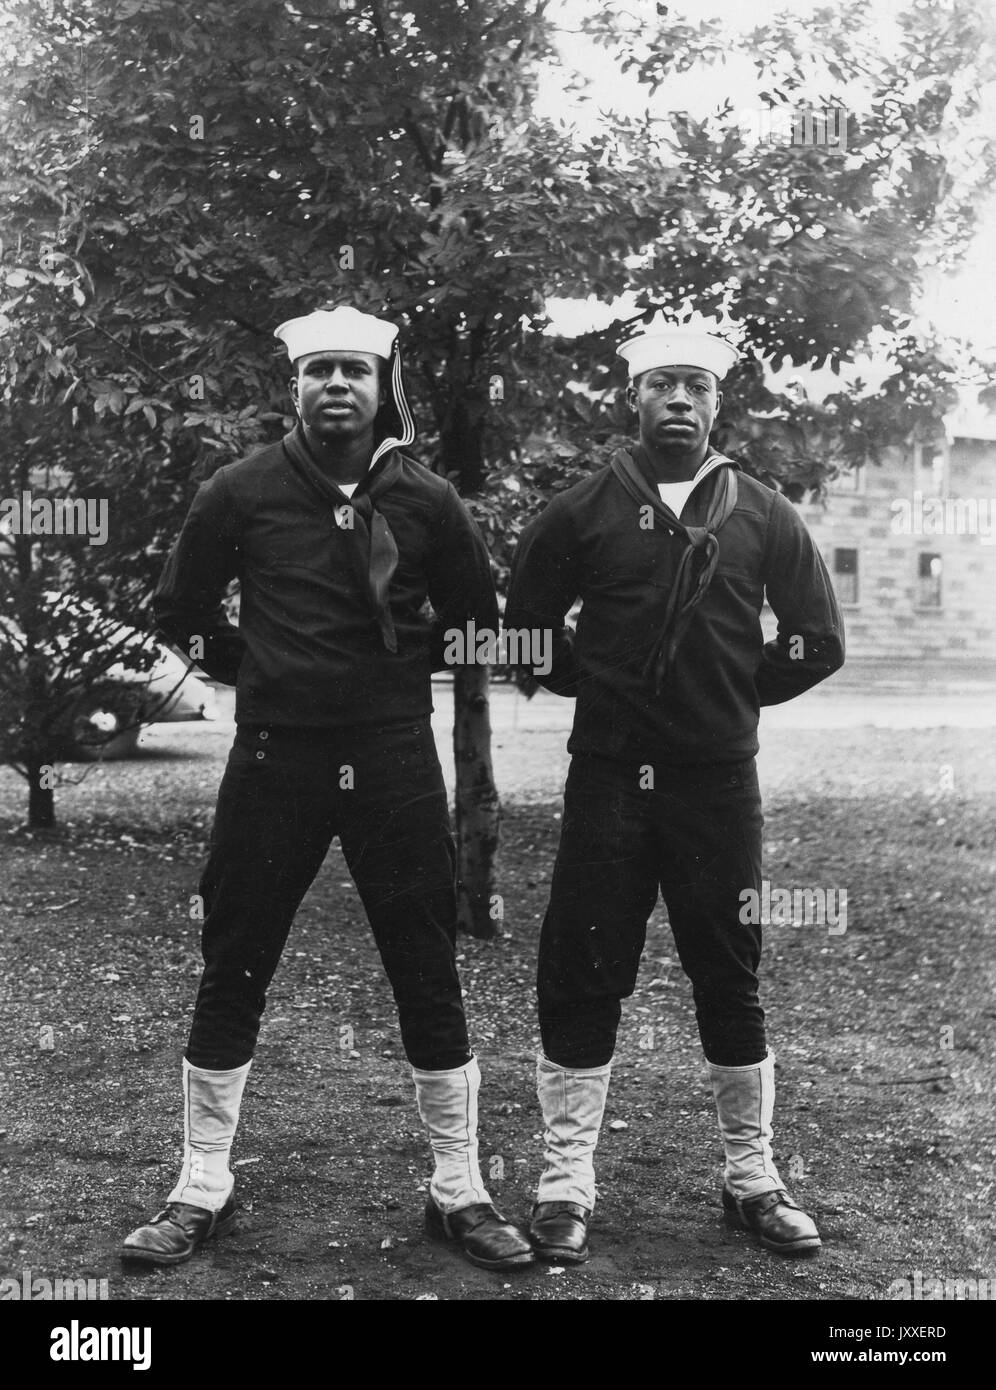 Ritratto di due marinai della Marina americana Africana che si trovano davanti ad un albero, entrambi indossano uniformi di Sailor di colore scuro e cappelli di Sailor di colore chiaro, entrambi hanno le loro braccia piegate e dietro le loro spalle, 1920. Foto Stock